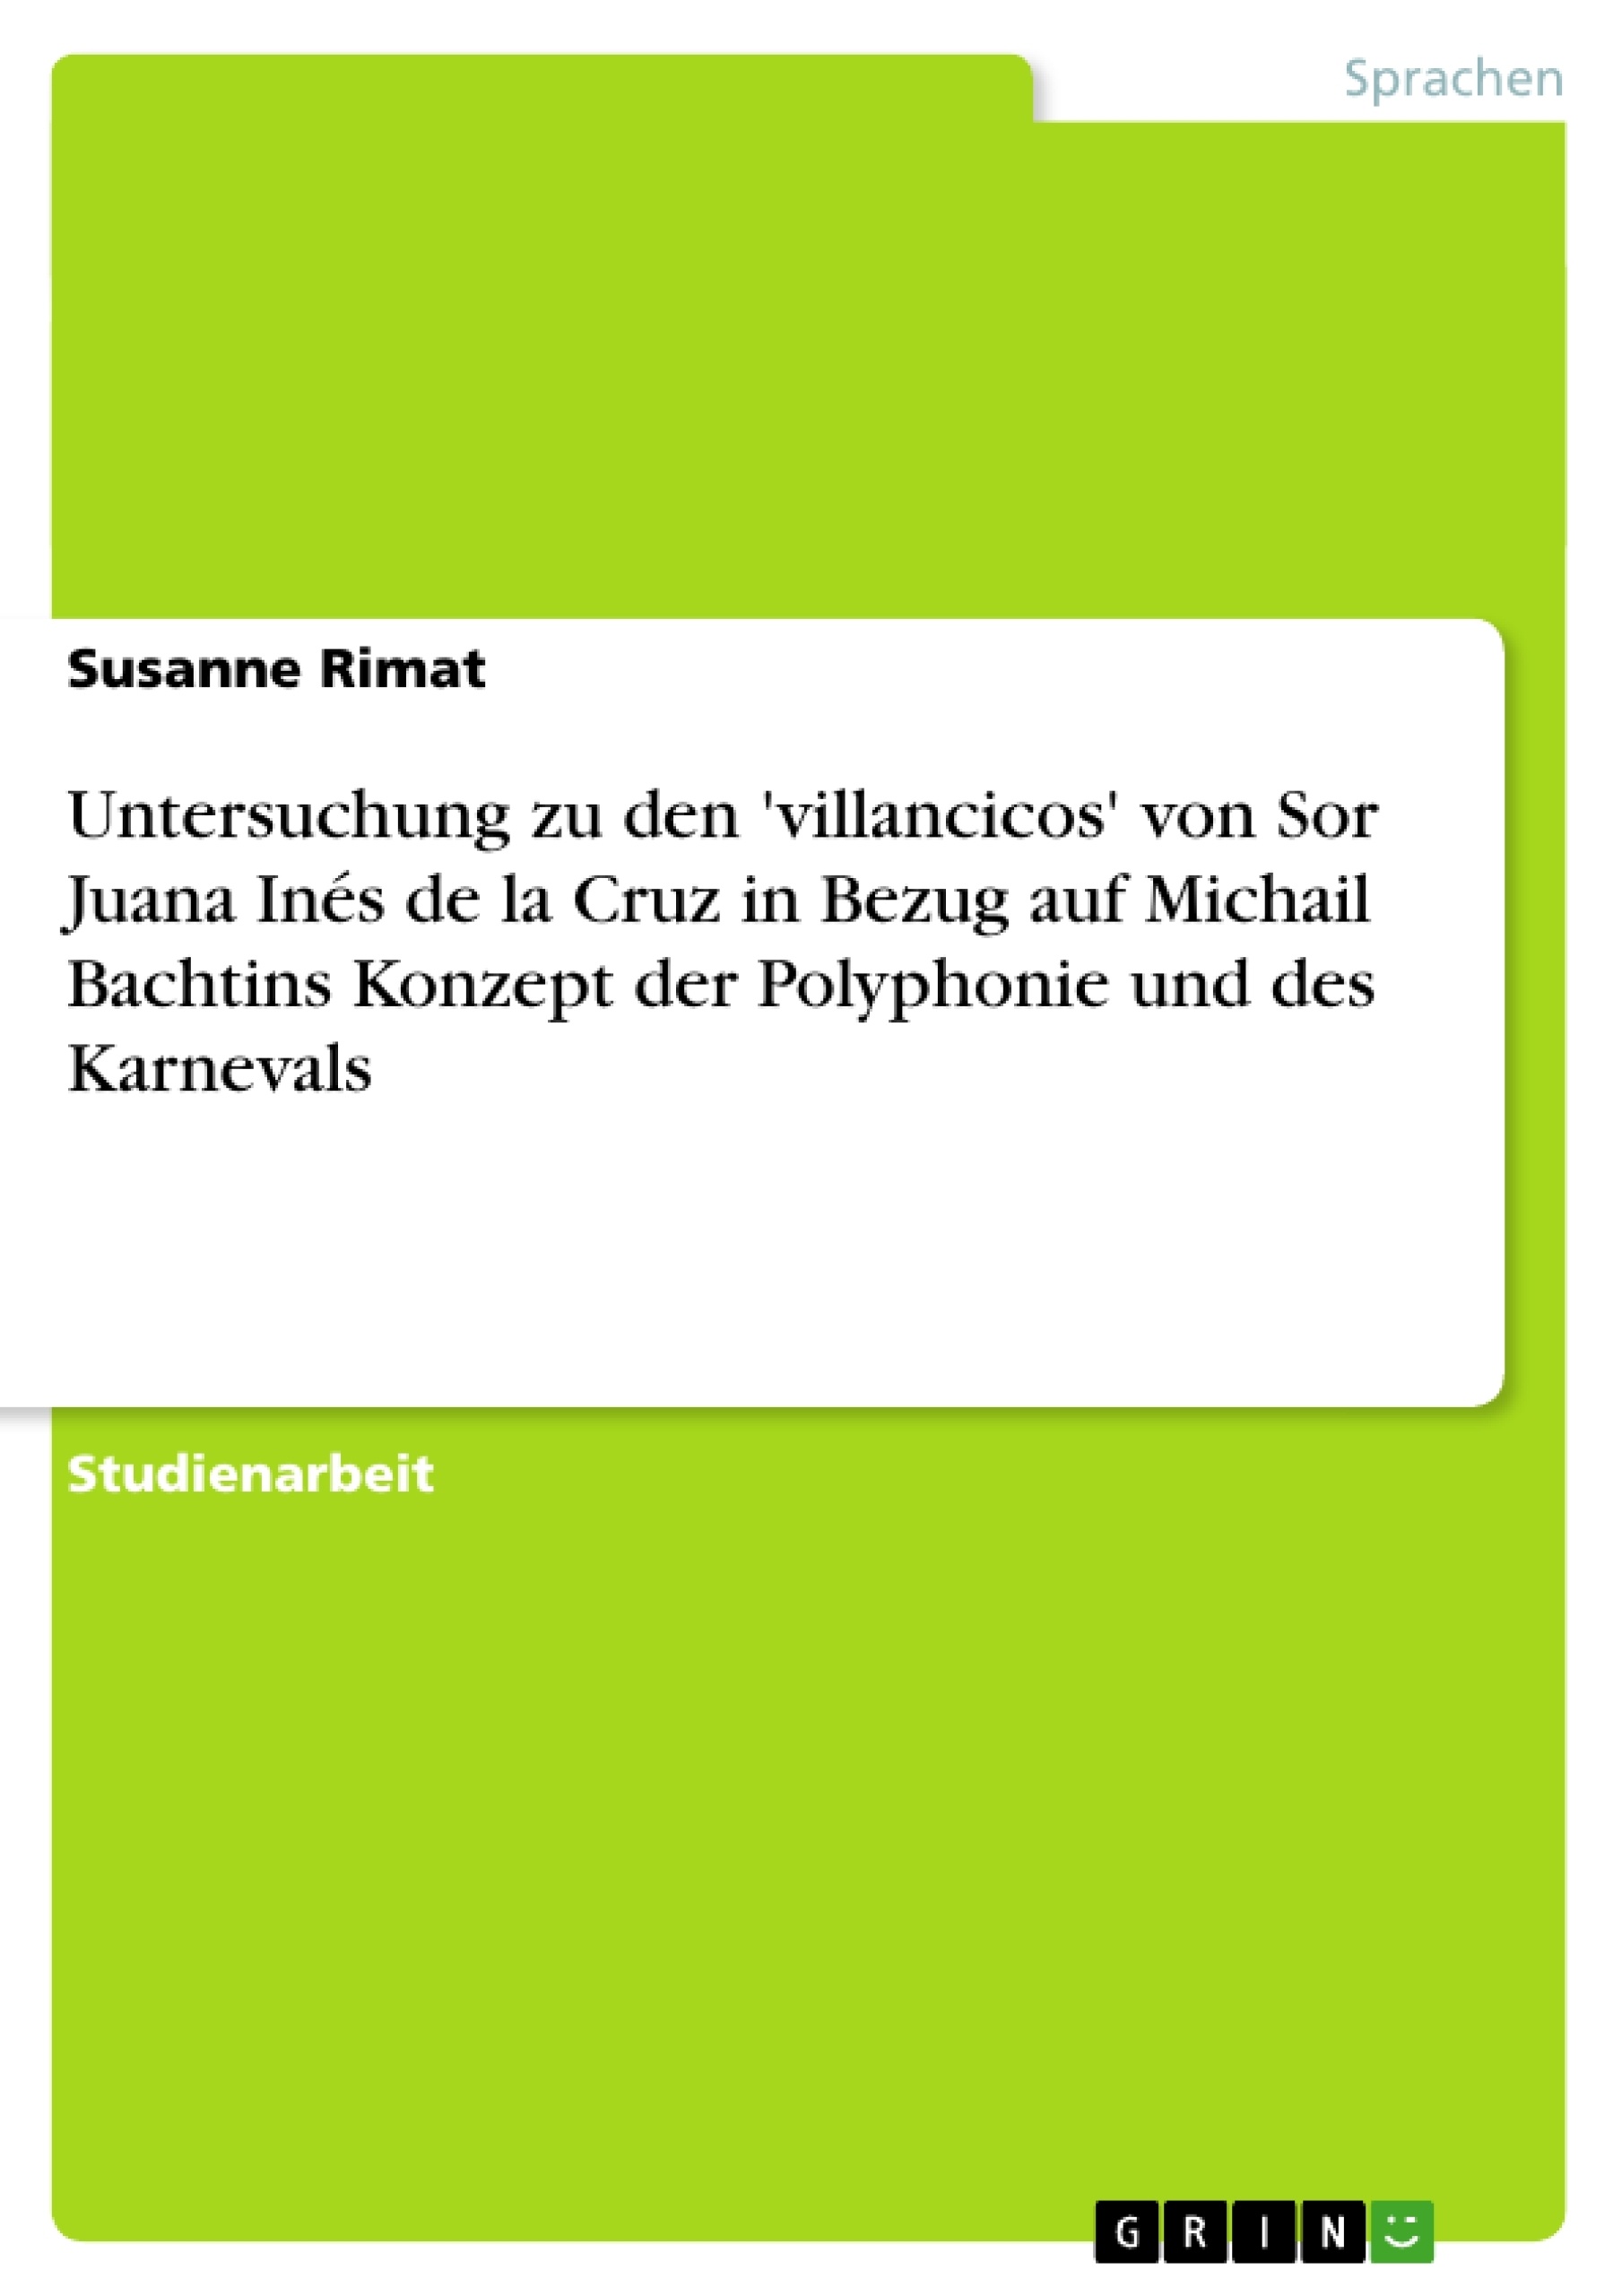 Titre: Untersuchung zu den 'villancicos' von Sor Juana Inés de la Cruz in Bezug auf Michail Bachtins Konzept der Polyphonie und des Karnevals